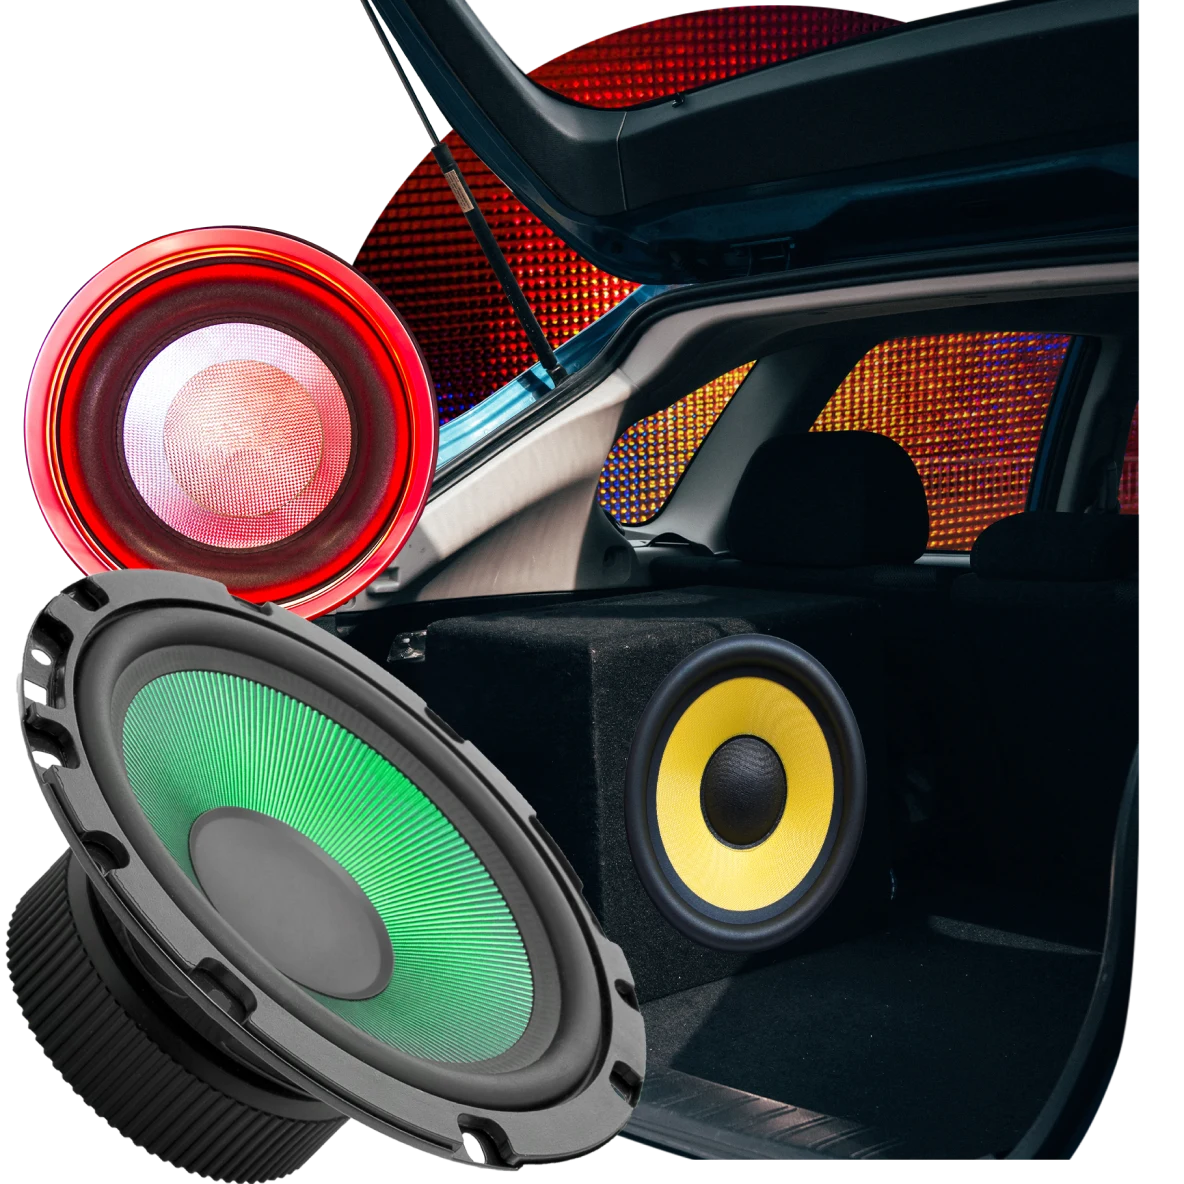 Colagem de peças do sistema de som de um carro. Alto-falantes vermelho, amarelo, preto e verde. Carro com o porta-malas aberto na frente de um grande farol.